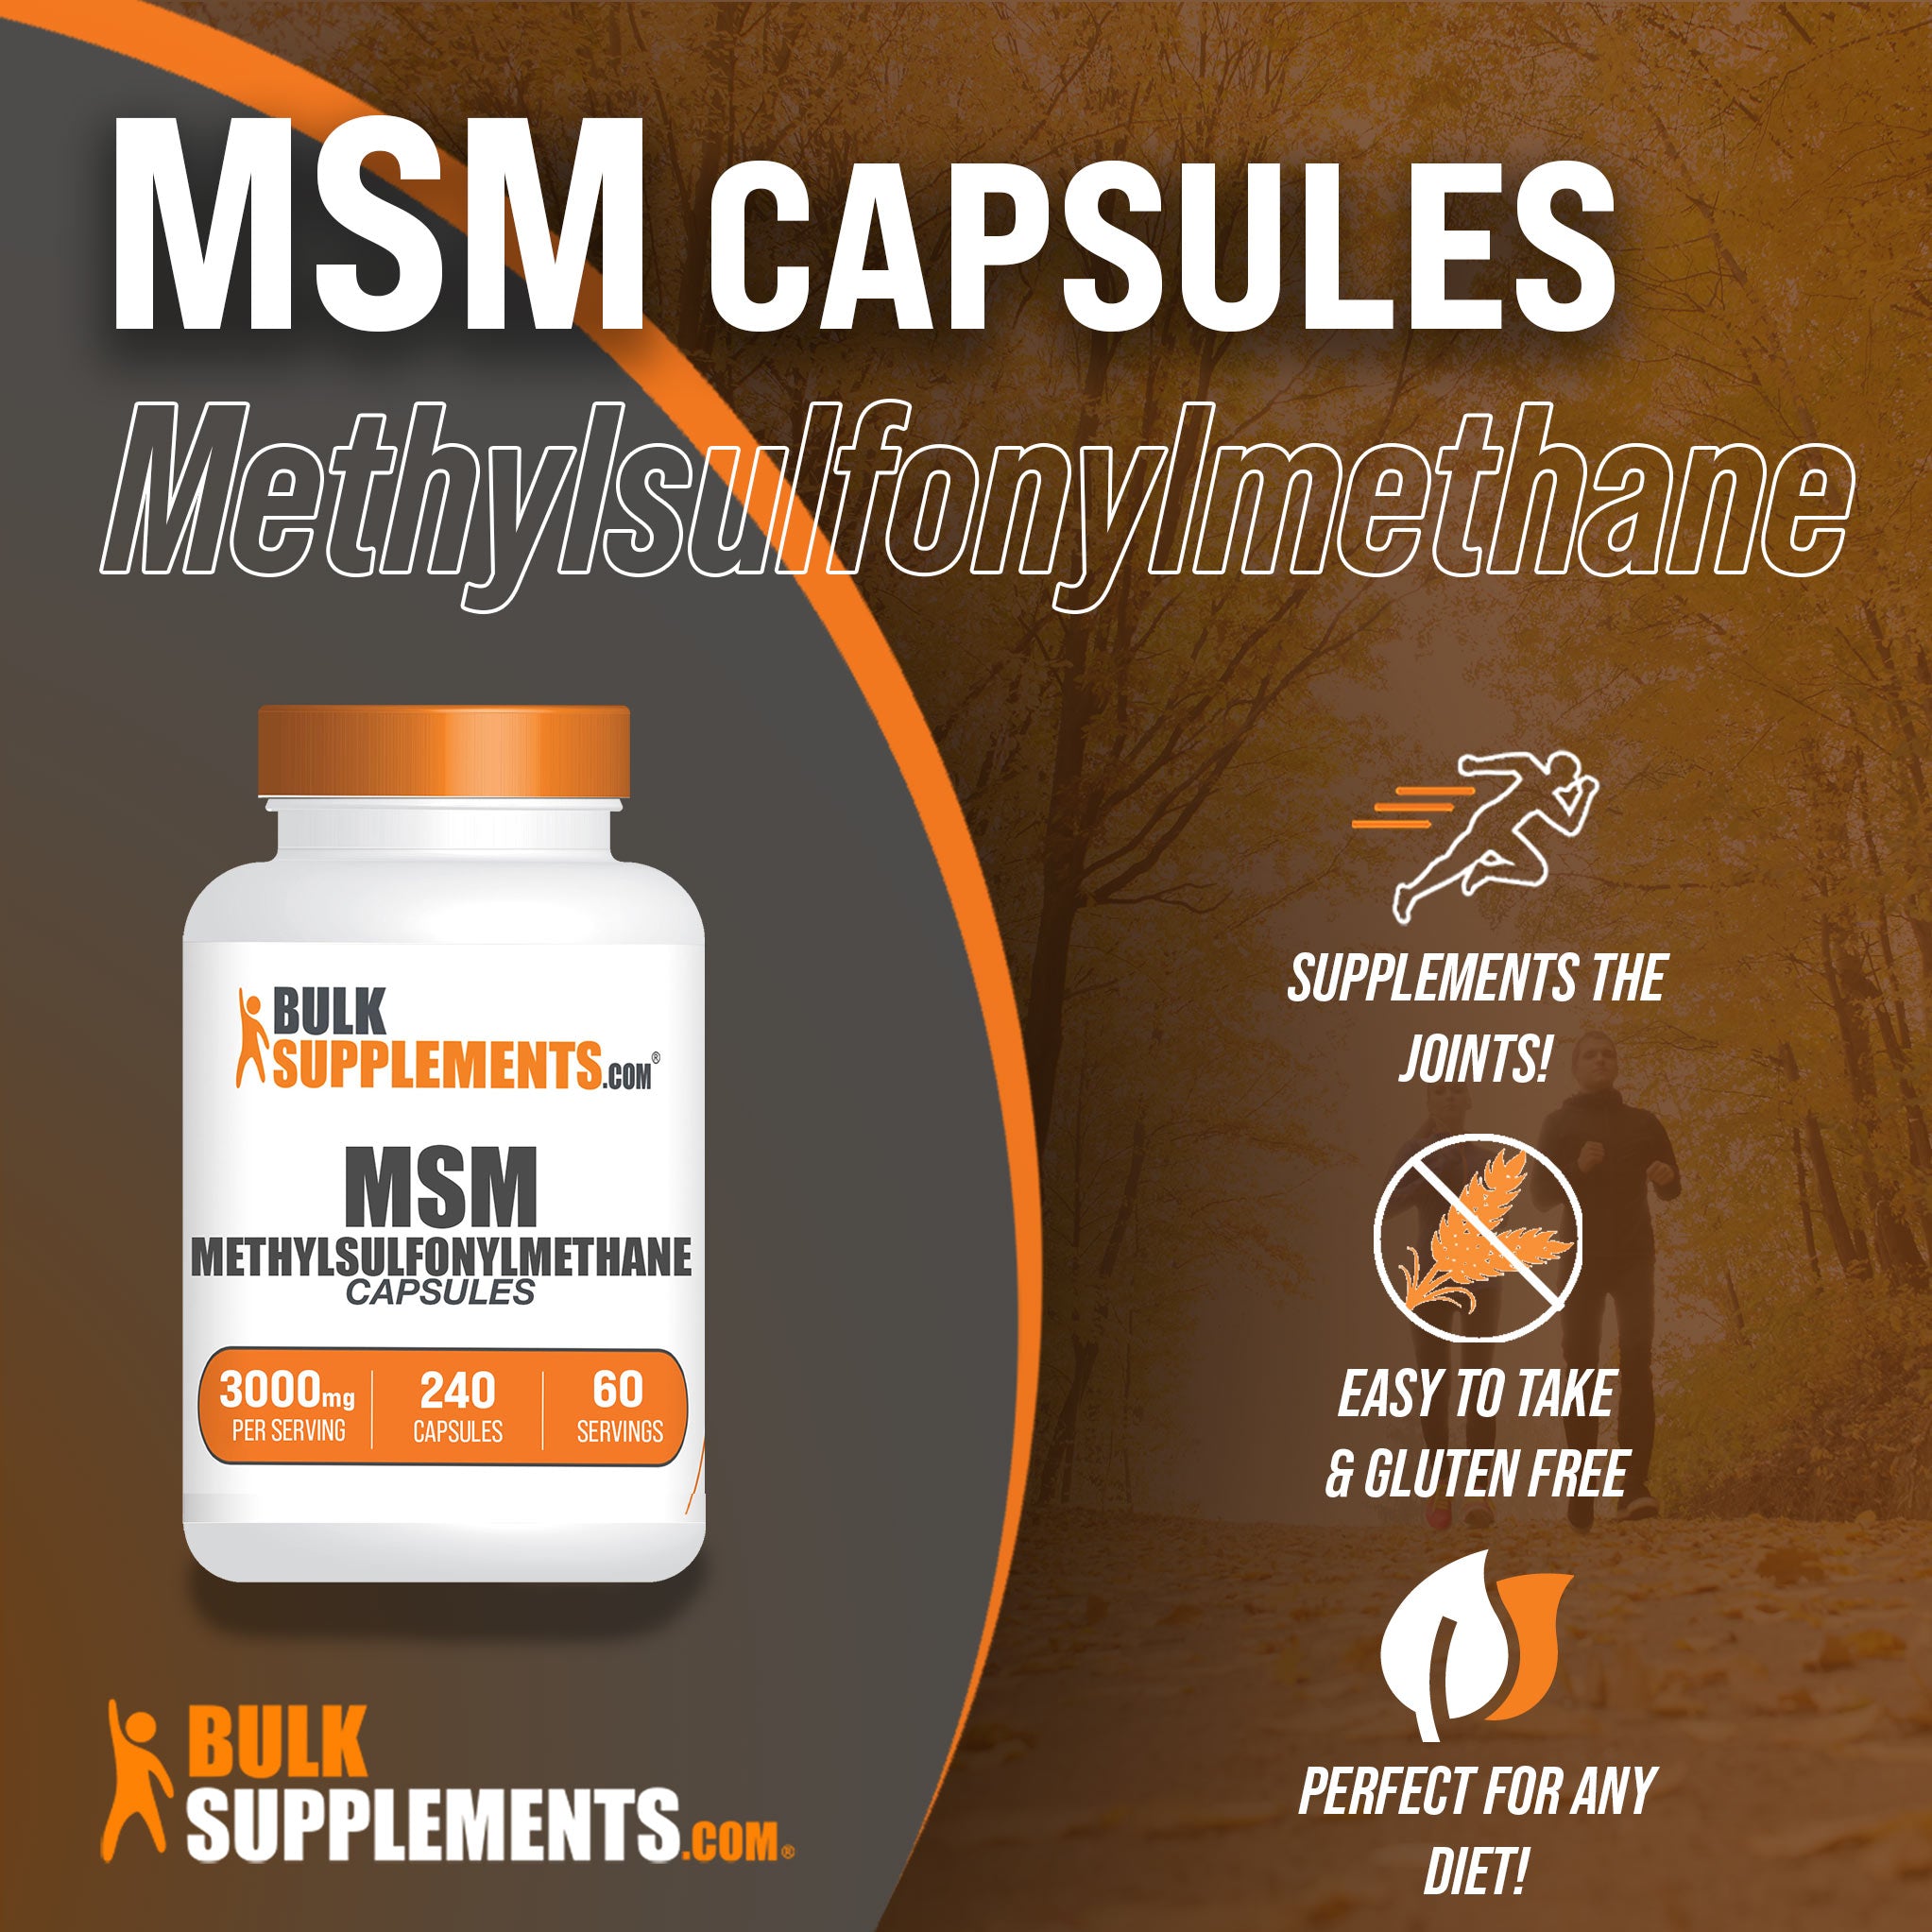 MSM Capsules 240 ct Main Benefits Image